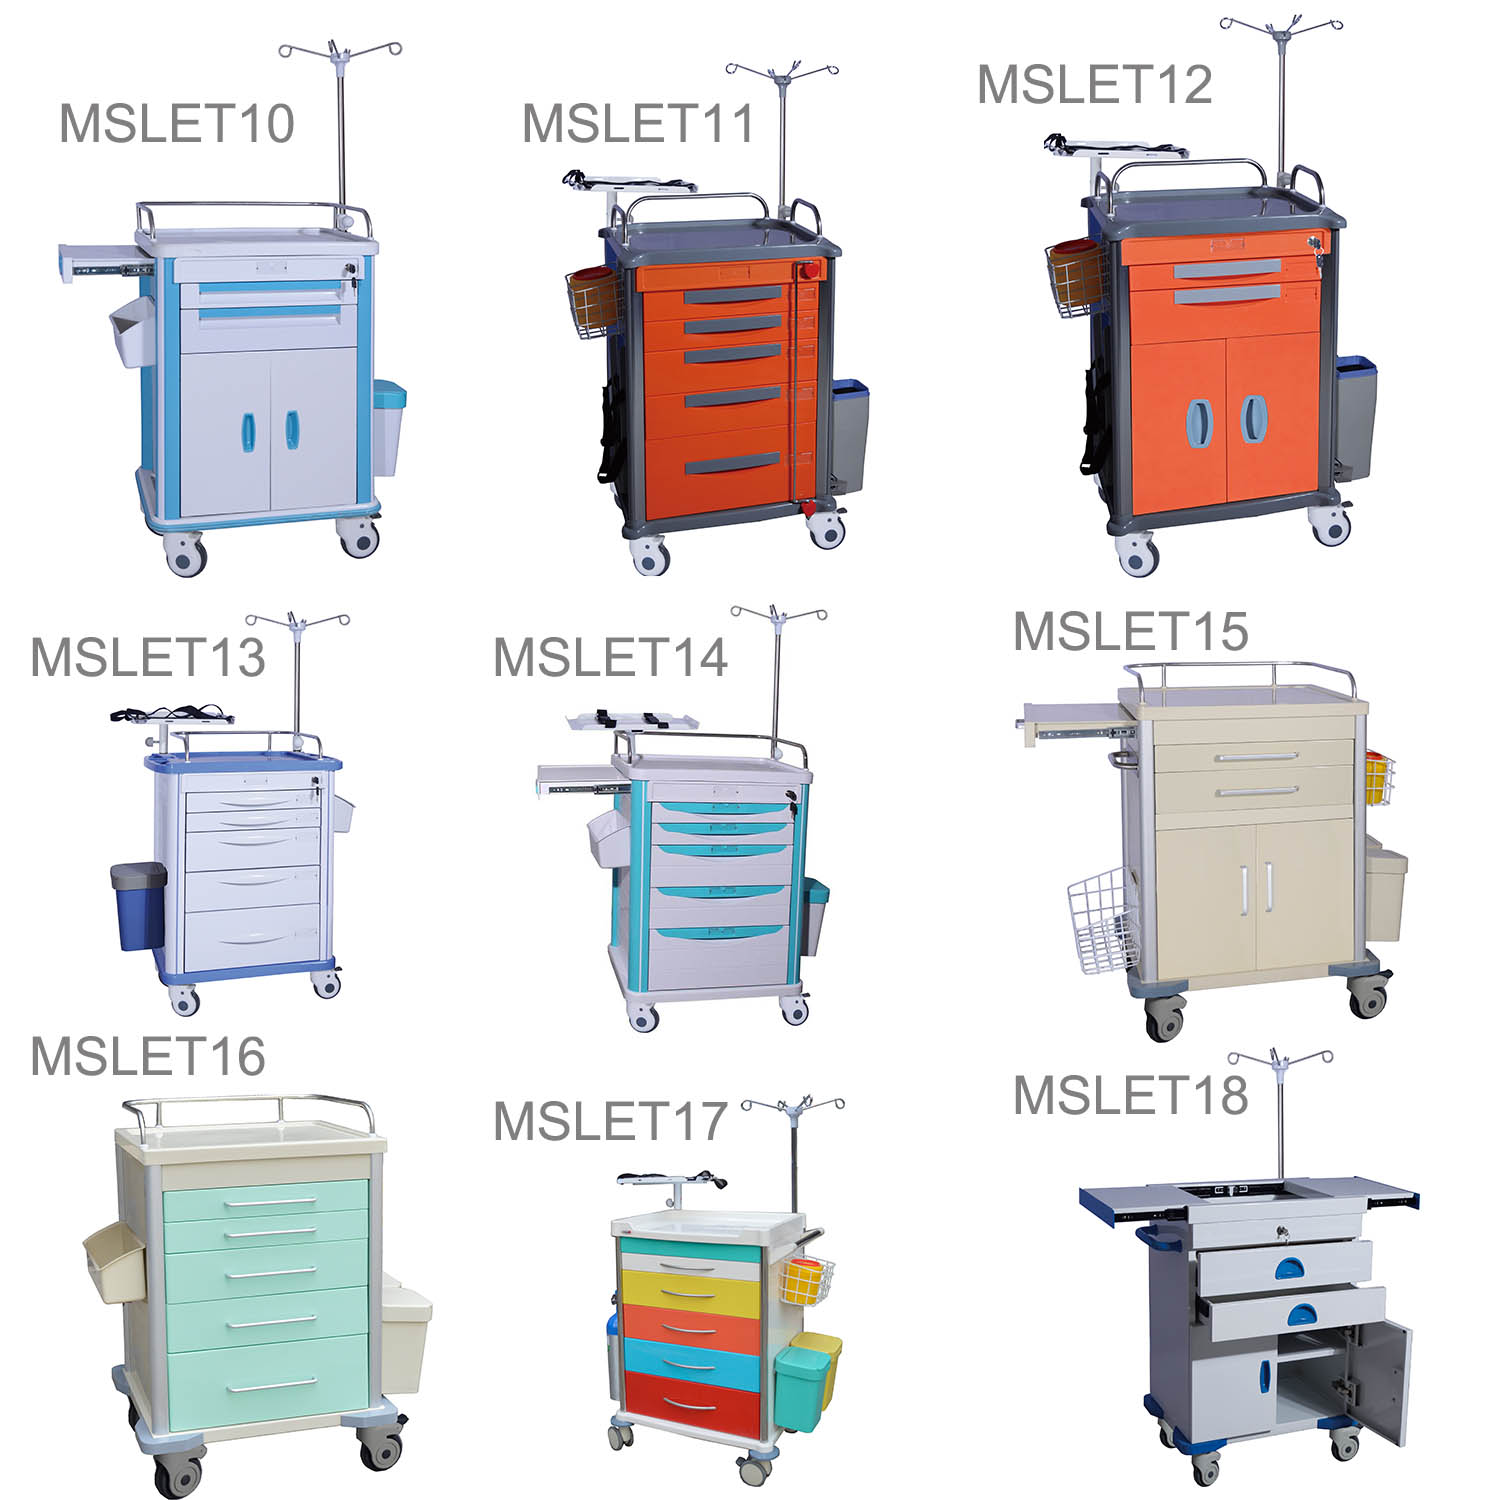 hospital equipment